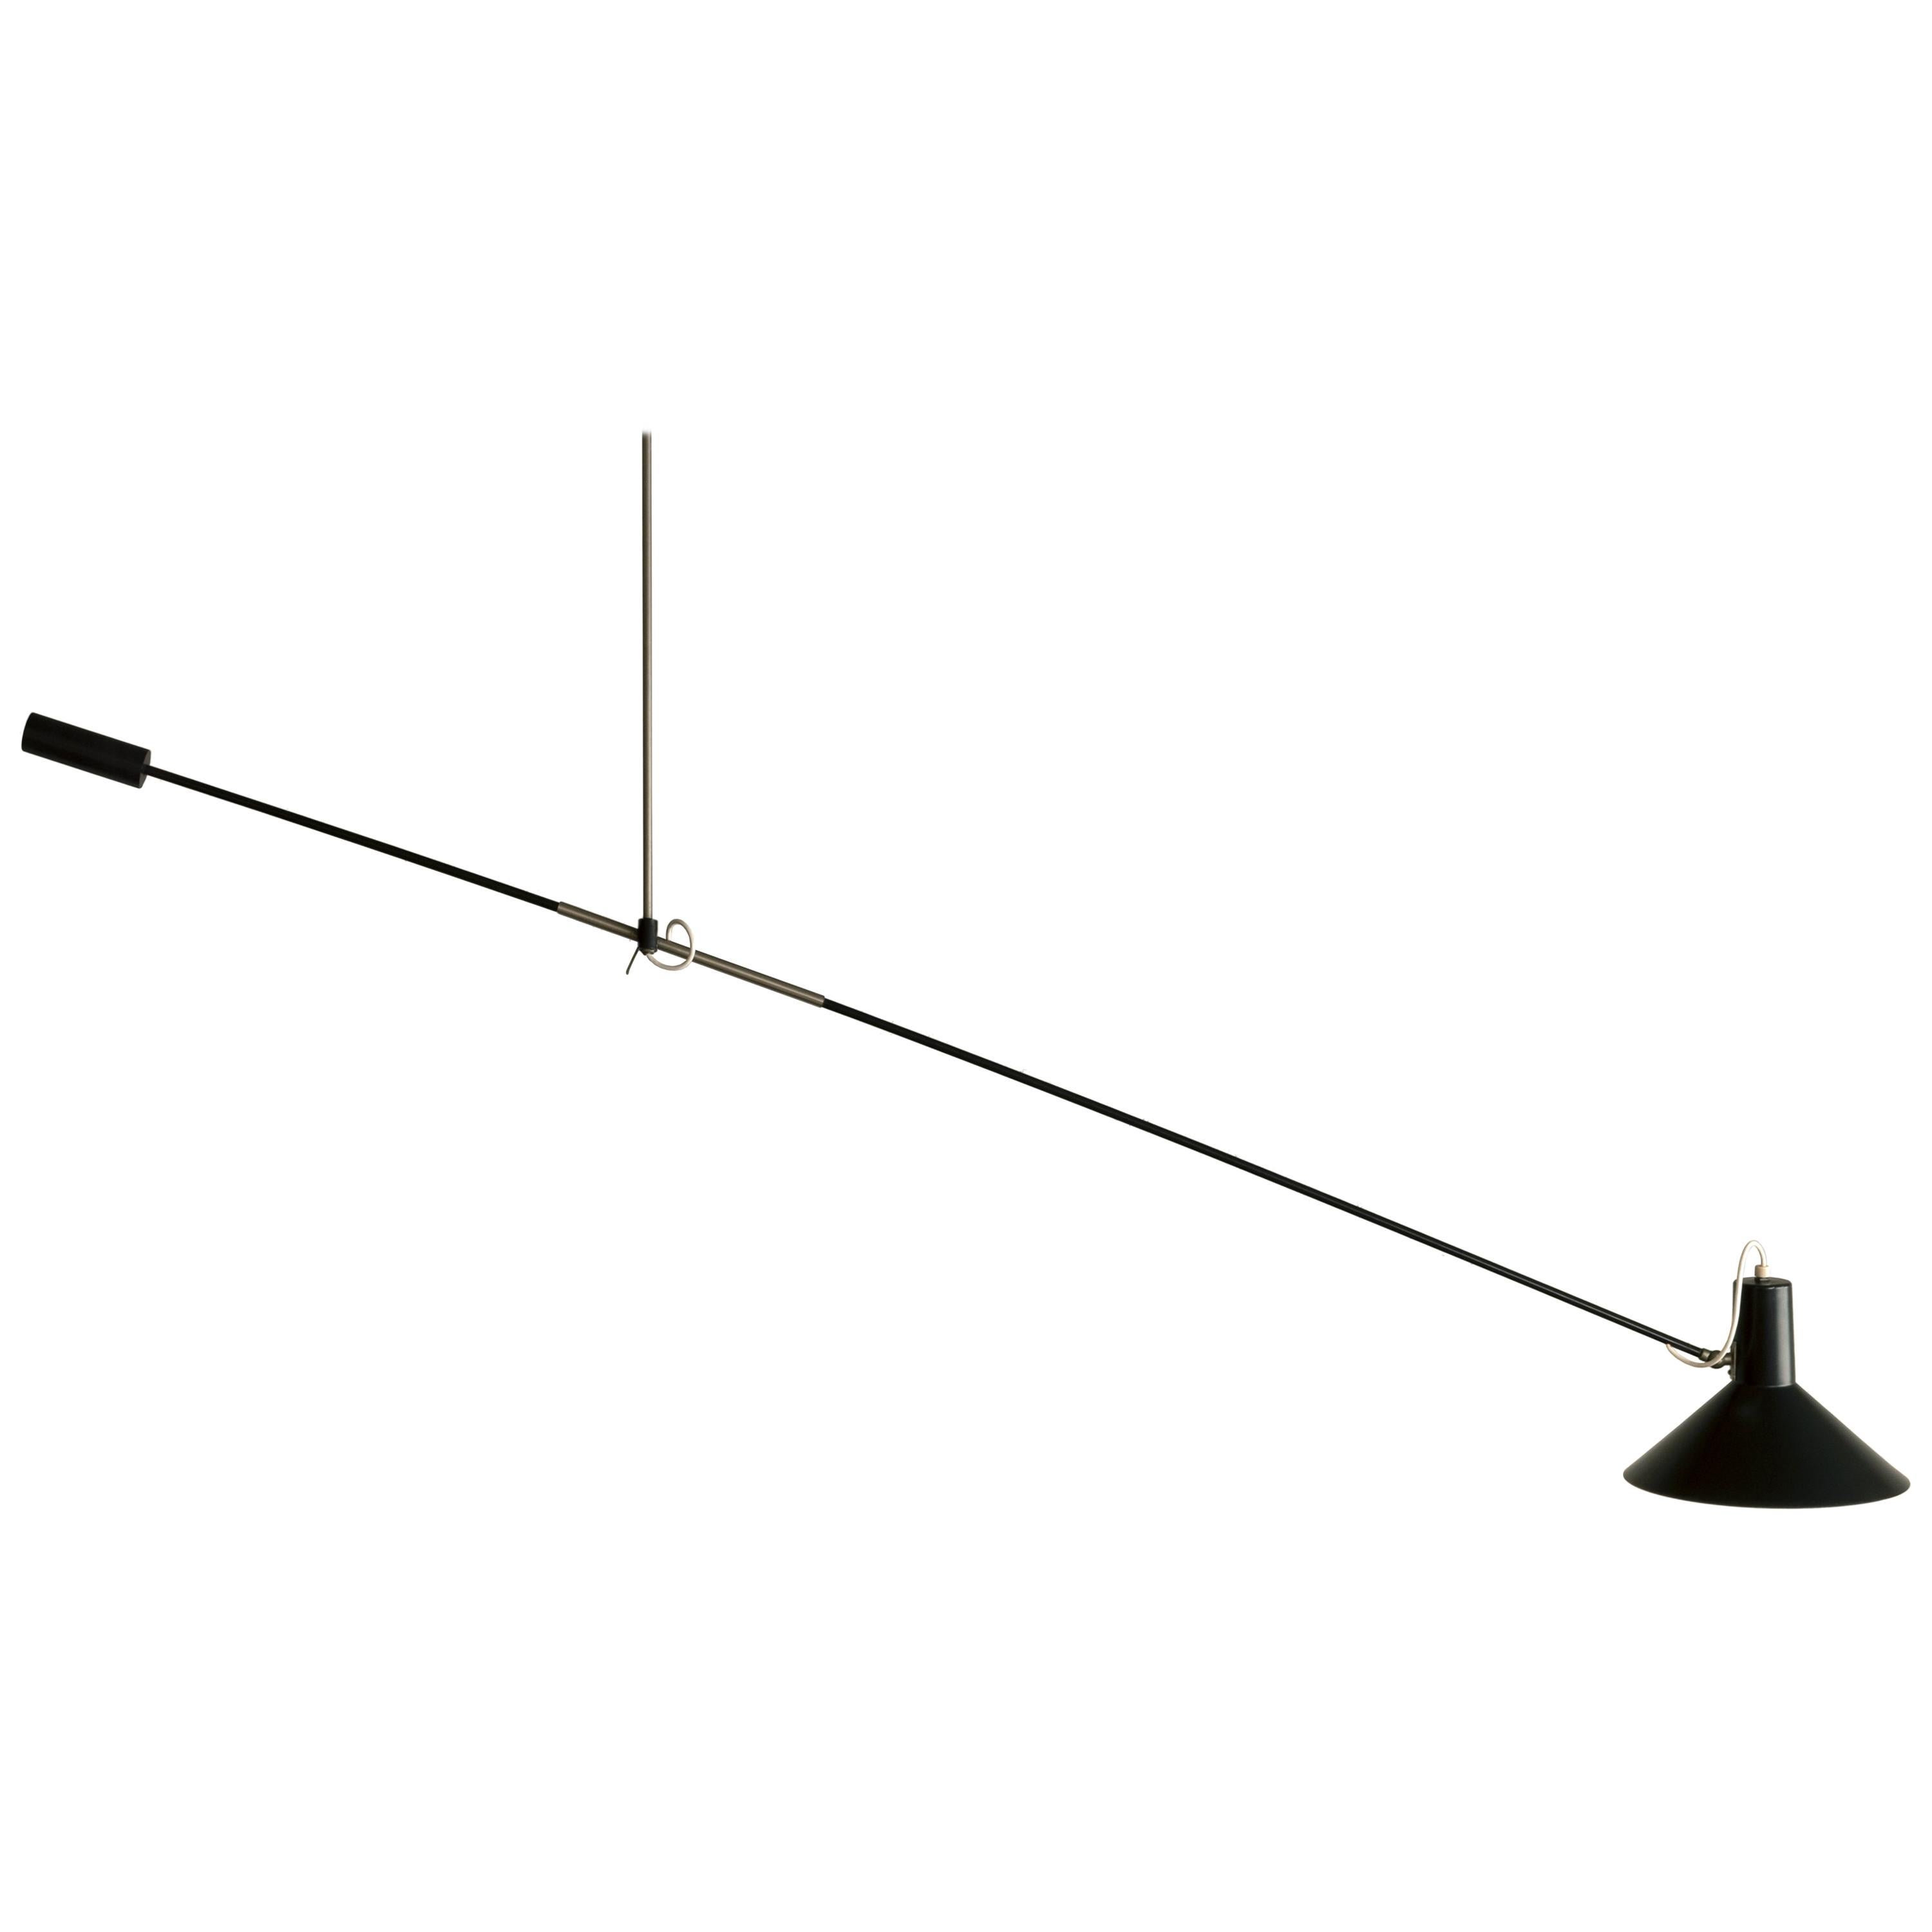 J.J.M. Hoogervorst black counter balance ceiling lamp for Anvia, Netherlands